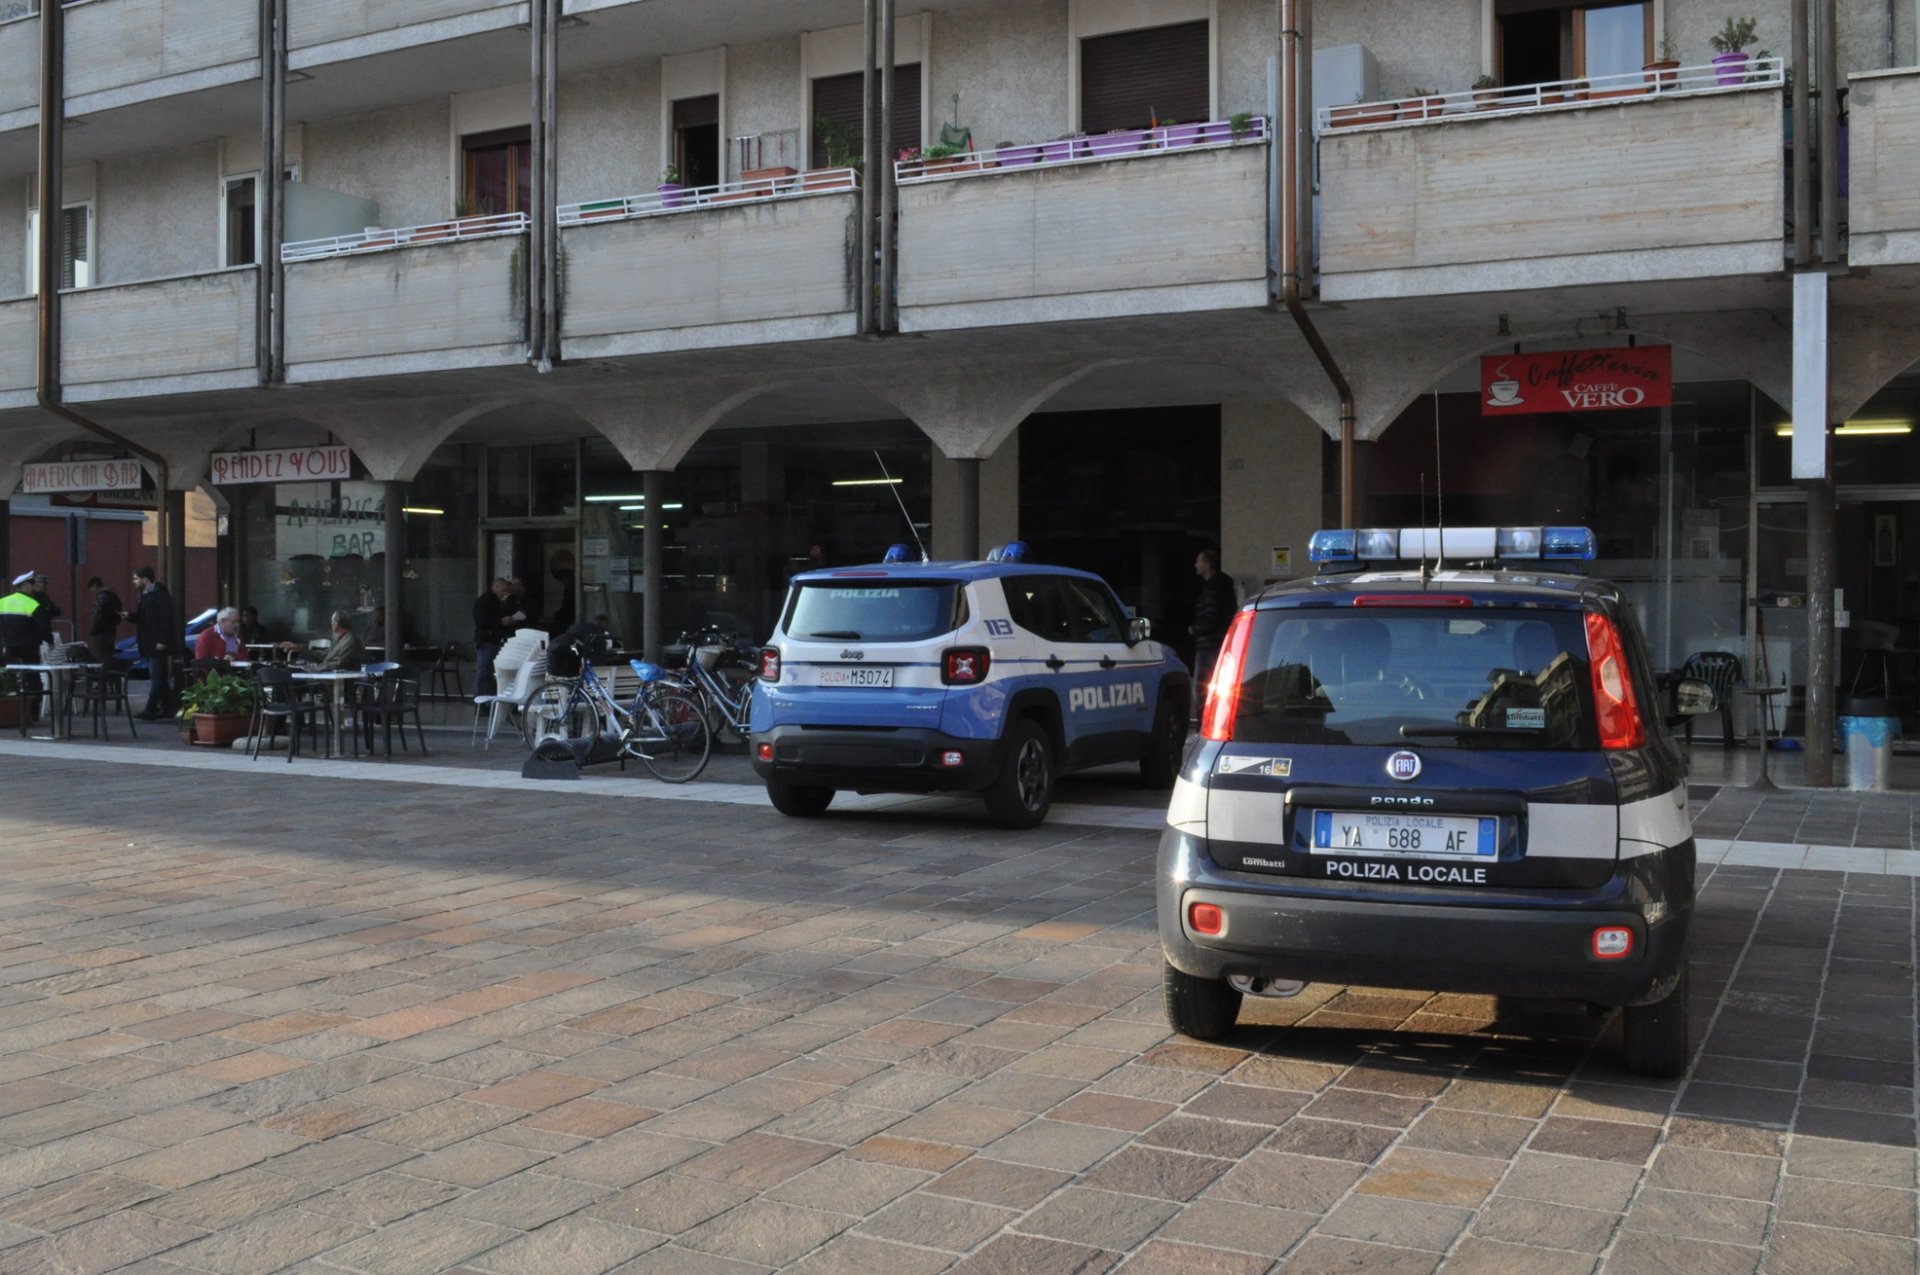 Controlli straordinari da parte della polizia di Stato. Servizio di controllo sulle strade e nei locali di Legnago verifiche su oltre 350 autovetture, 7 locali e 42 persone.